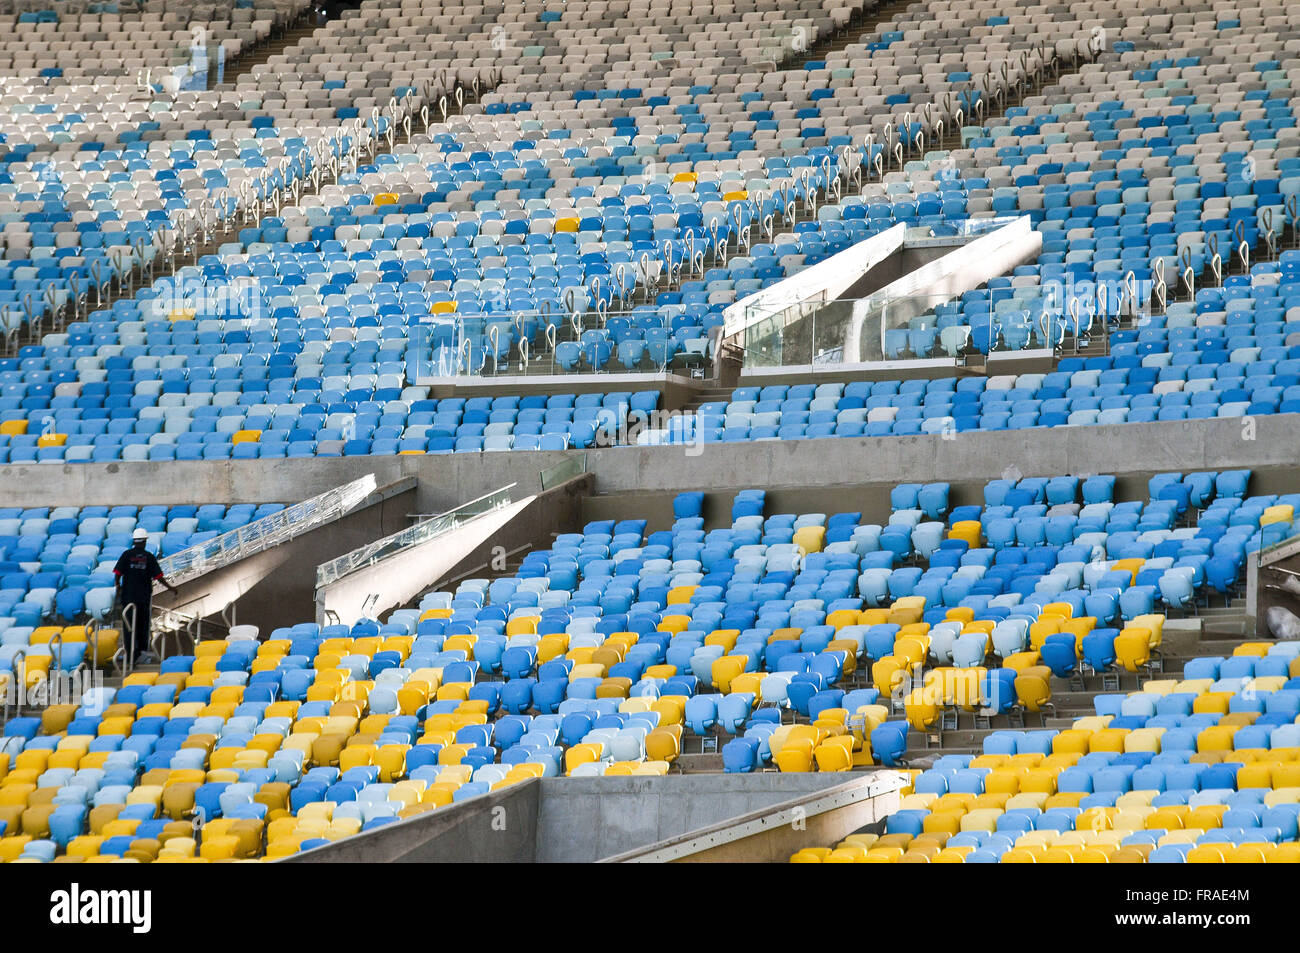 Sedie Estadio do Maracana rinnovate per la Coppa del Mondo 2014 Foto Stock